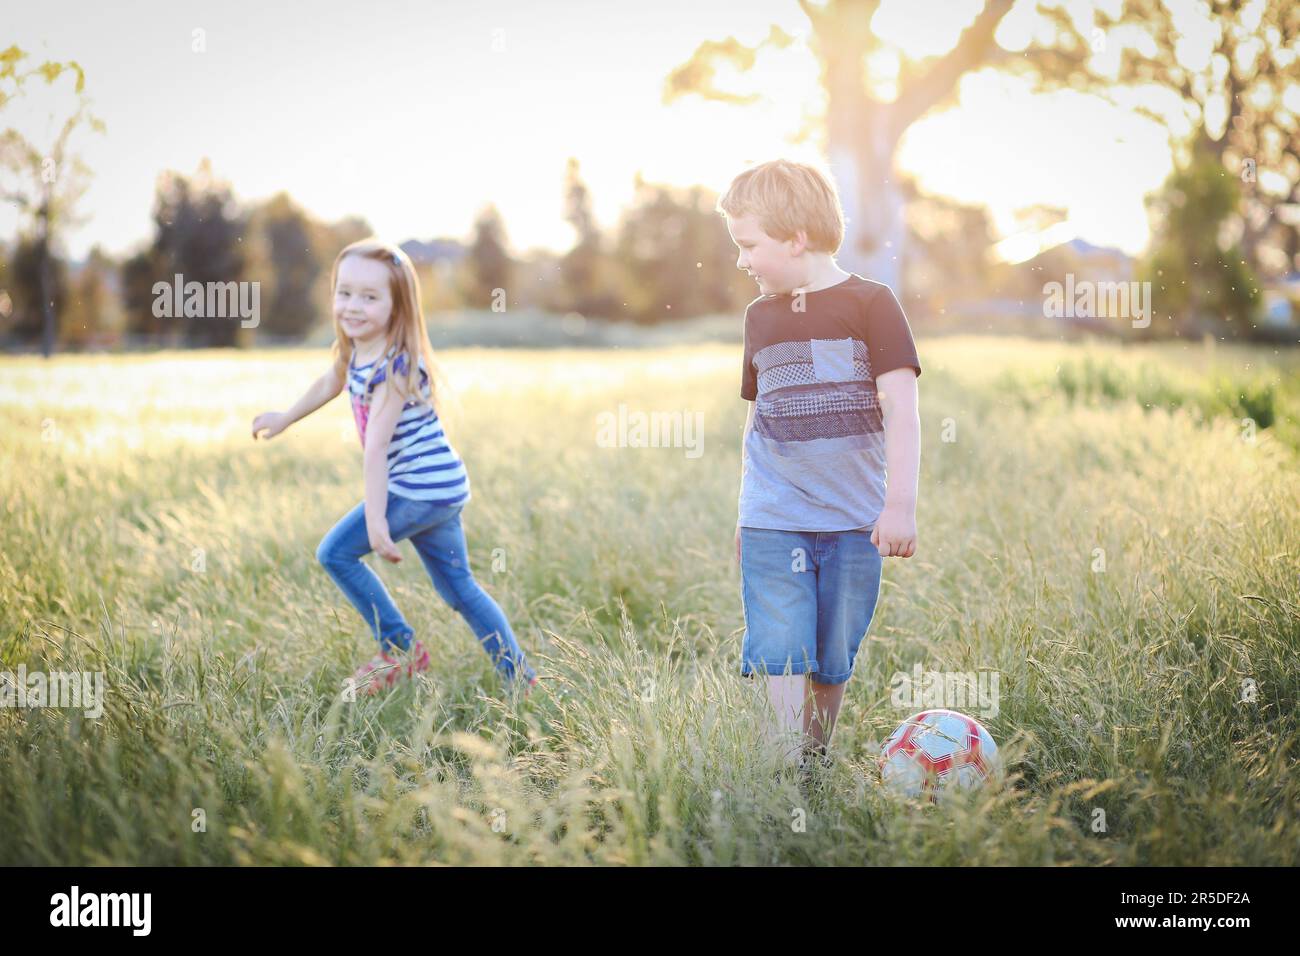 Junge und Mädchen Rennen durch langes Gras und spielen Fußball im Park. Australische Kinder haben Spaß im Freien in der Natur Stockfoto